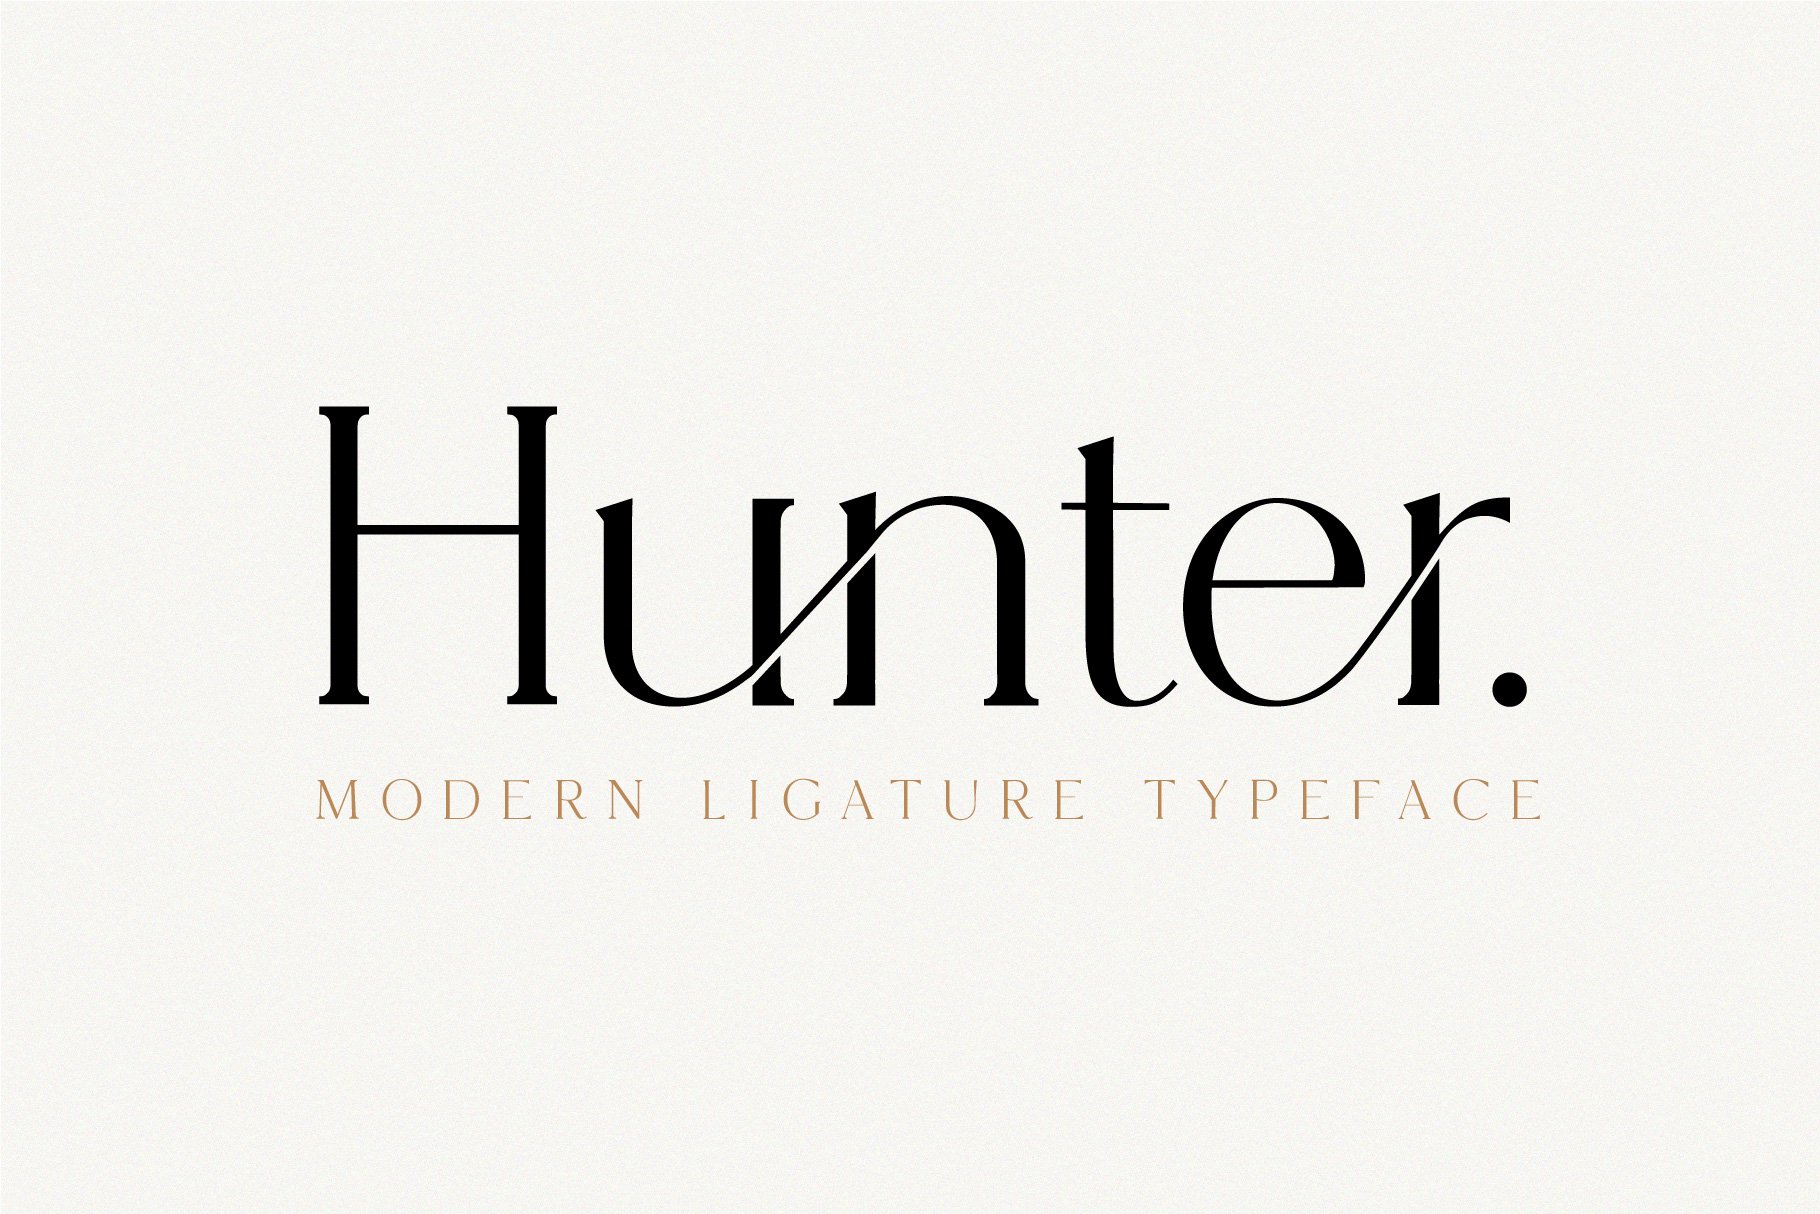 Hunter - Serif Ligature Font cover image.